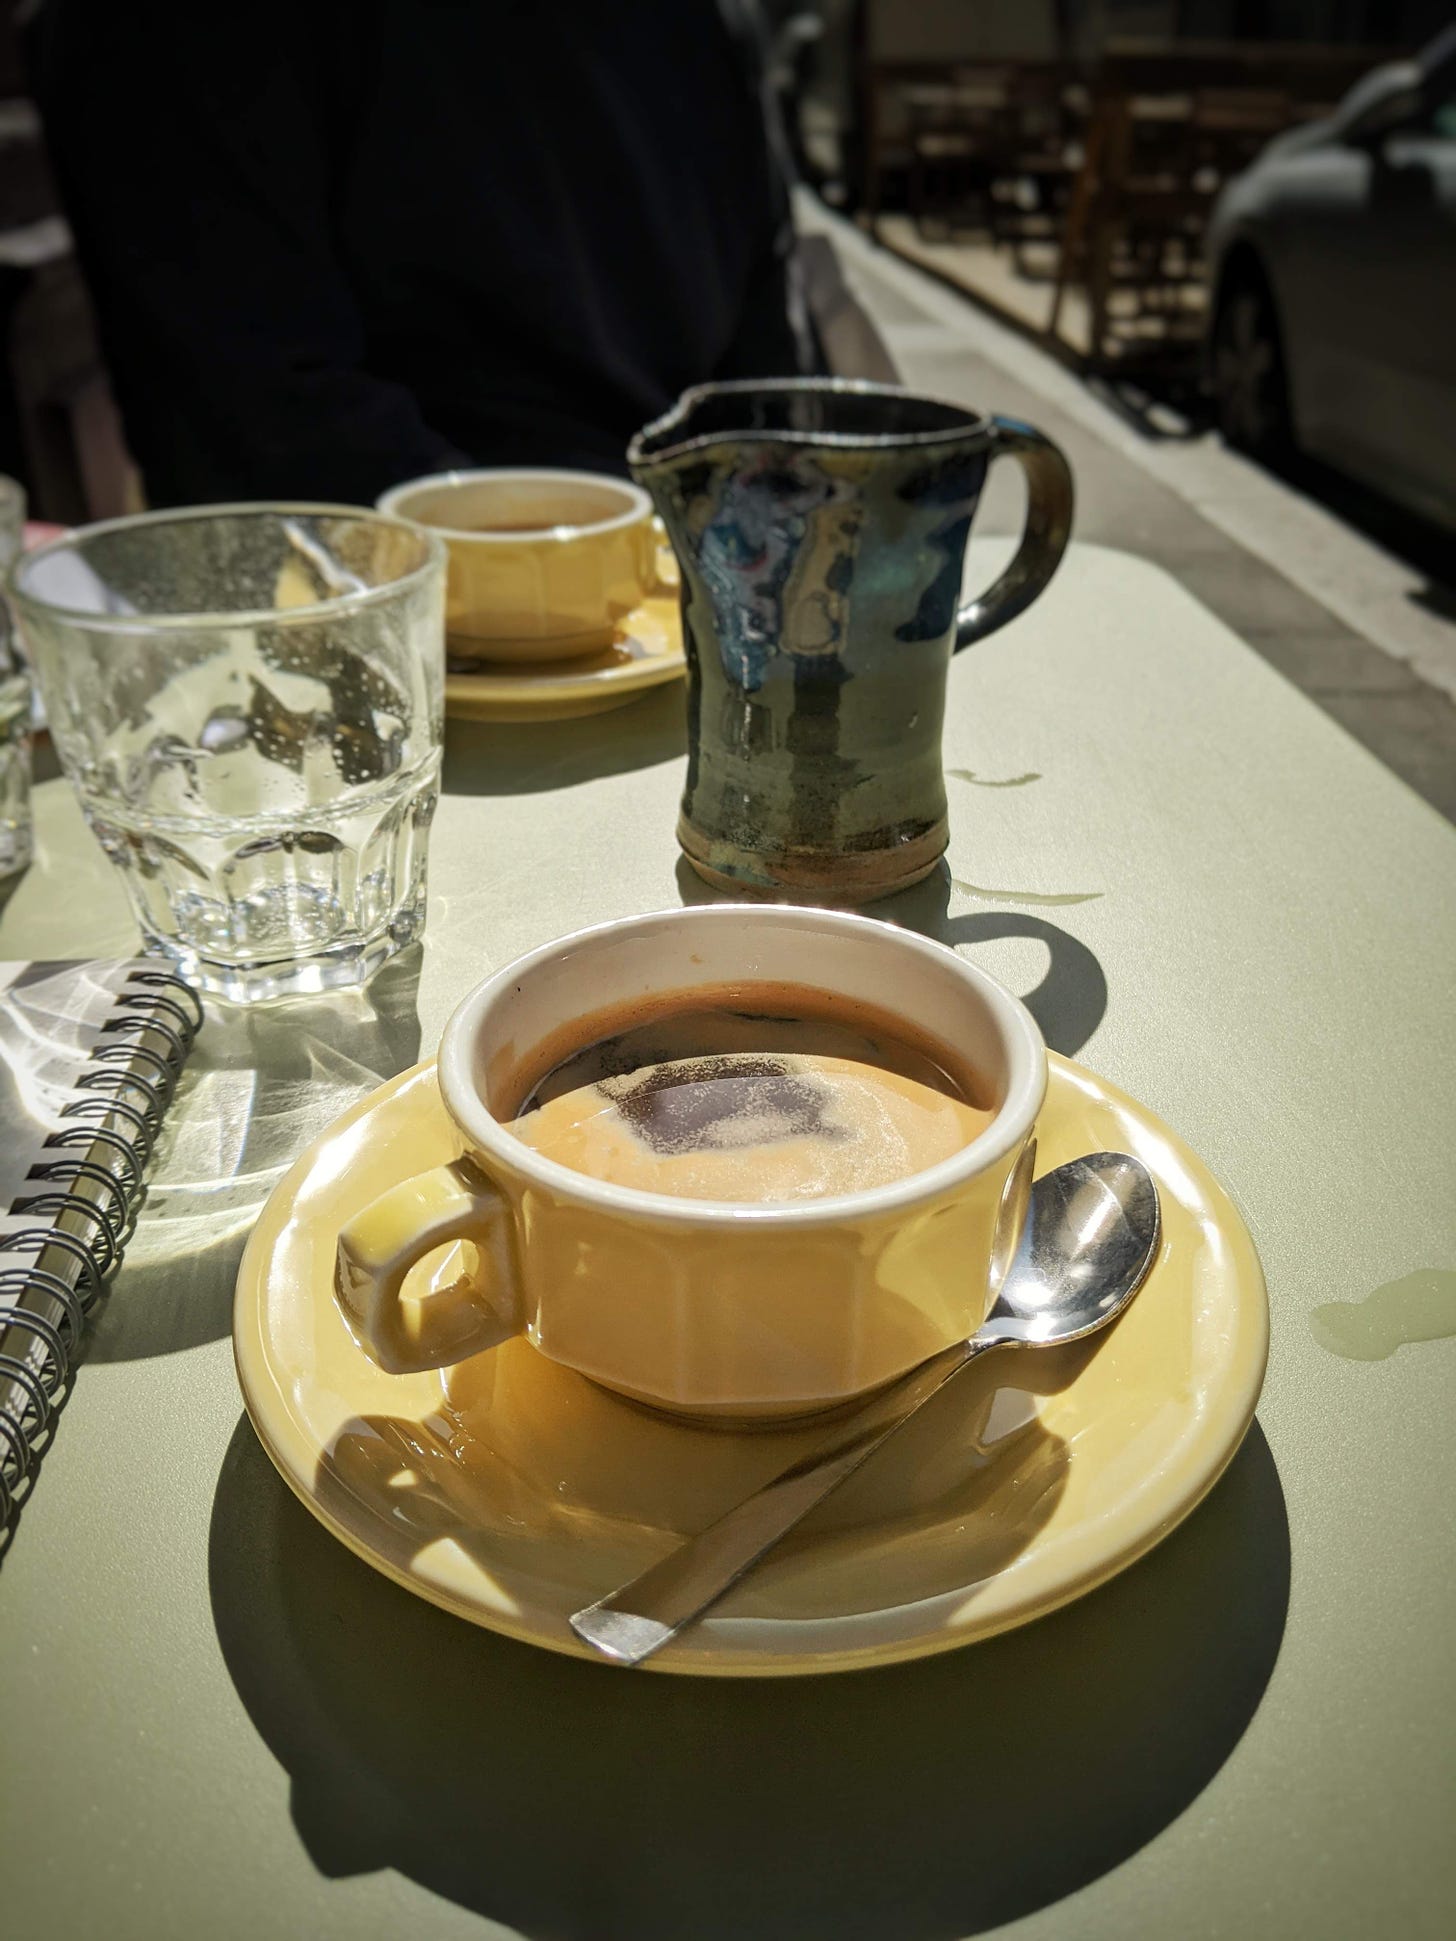 Café allongé in Paris, France